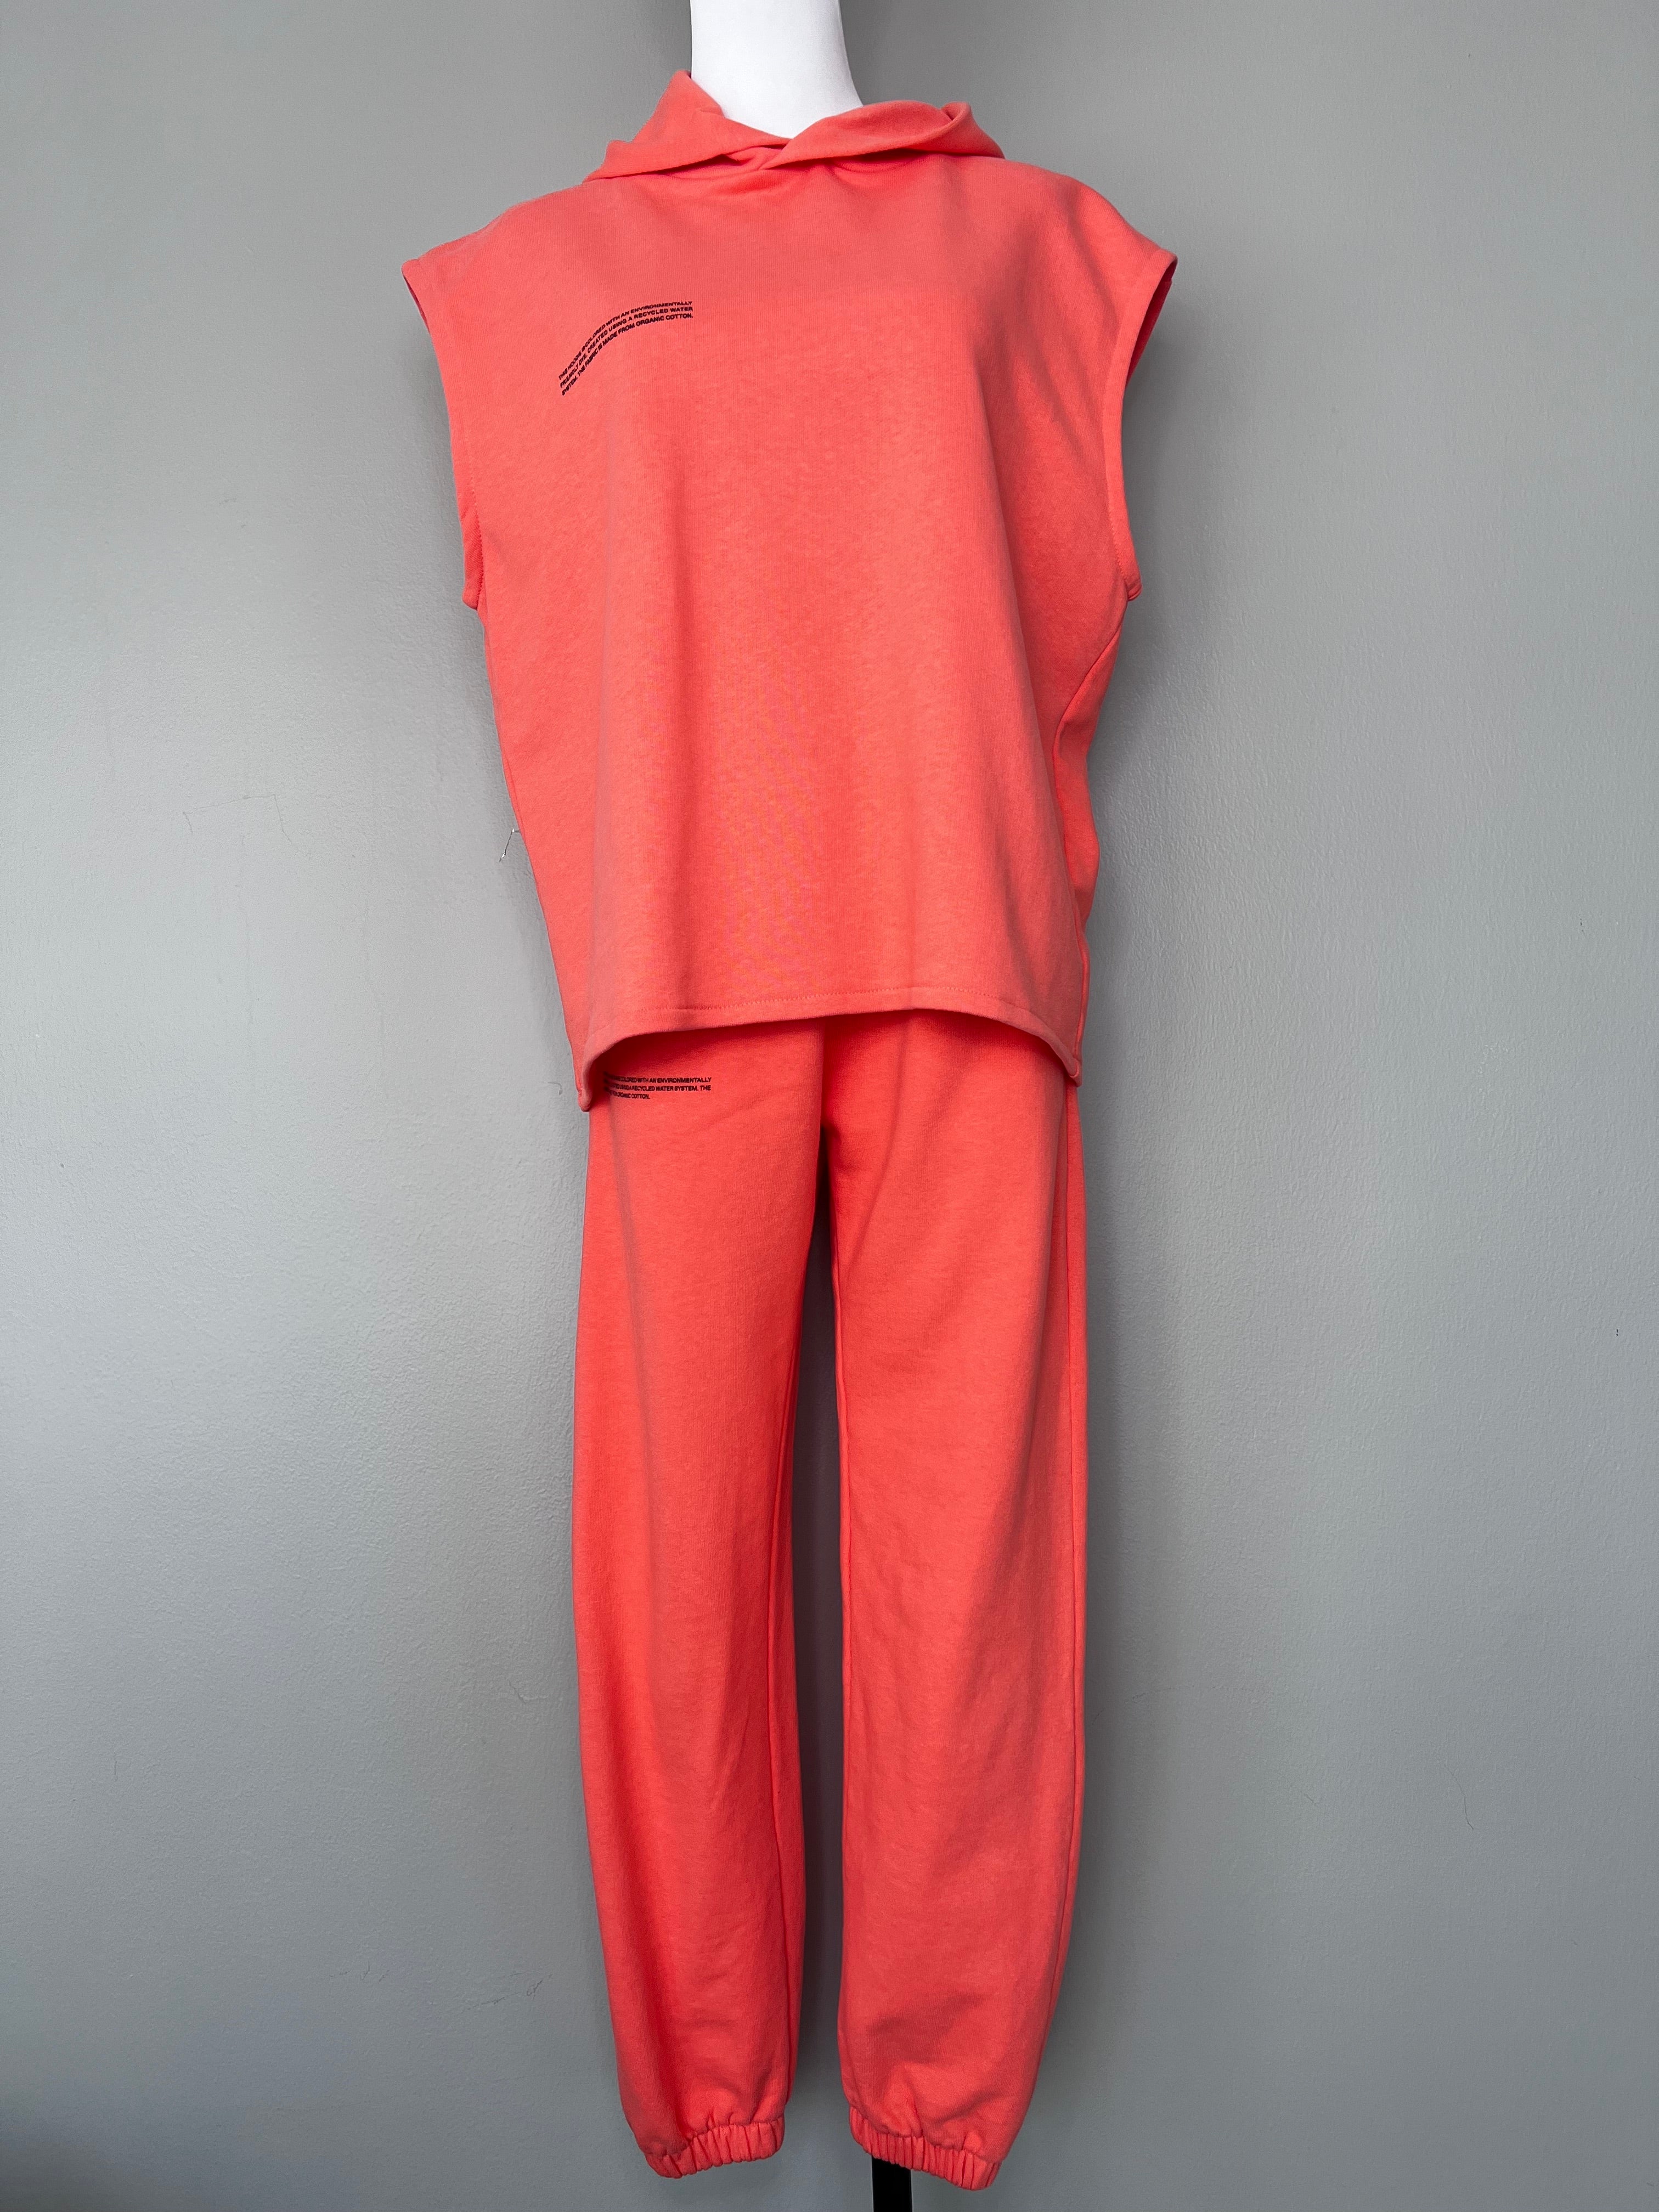 Neon orange sleeveless sweater and sweats set - PANGAIA